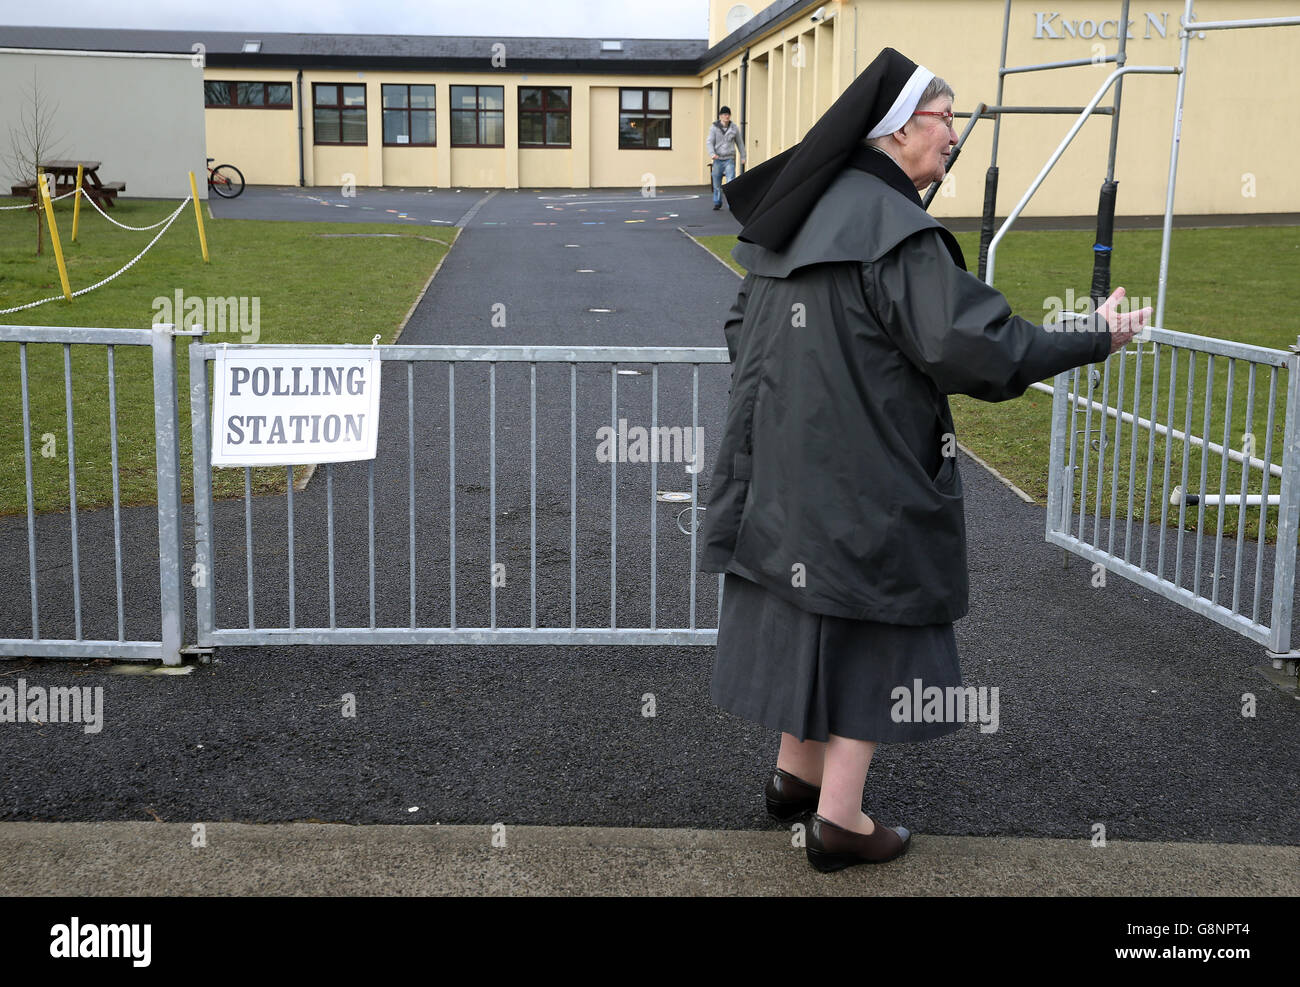 Suor Anastasia della Francescana arriva a esprimere il suo voto alla scuola nazionale di Knock, Mayo, mentre il paese si dirige verso i sondaggi di fronte a uno dei risultati più imprevedibili negli ultimi tempi. Foto Stock